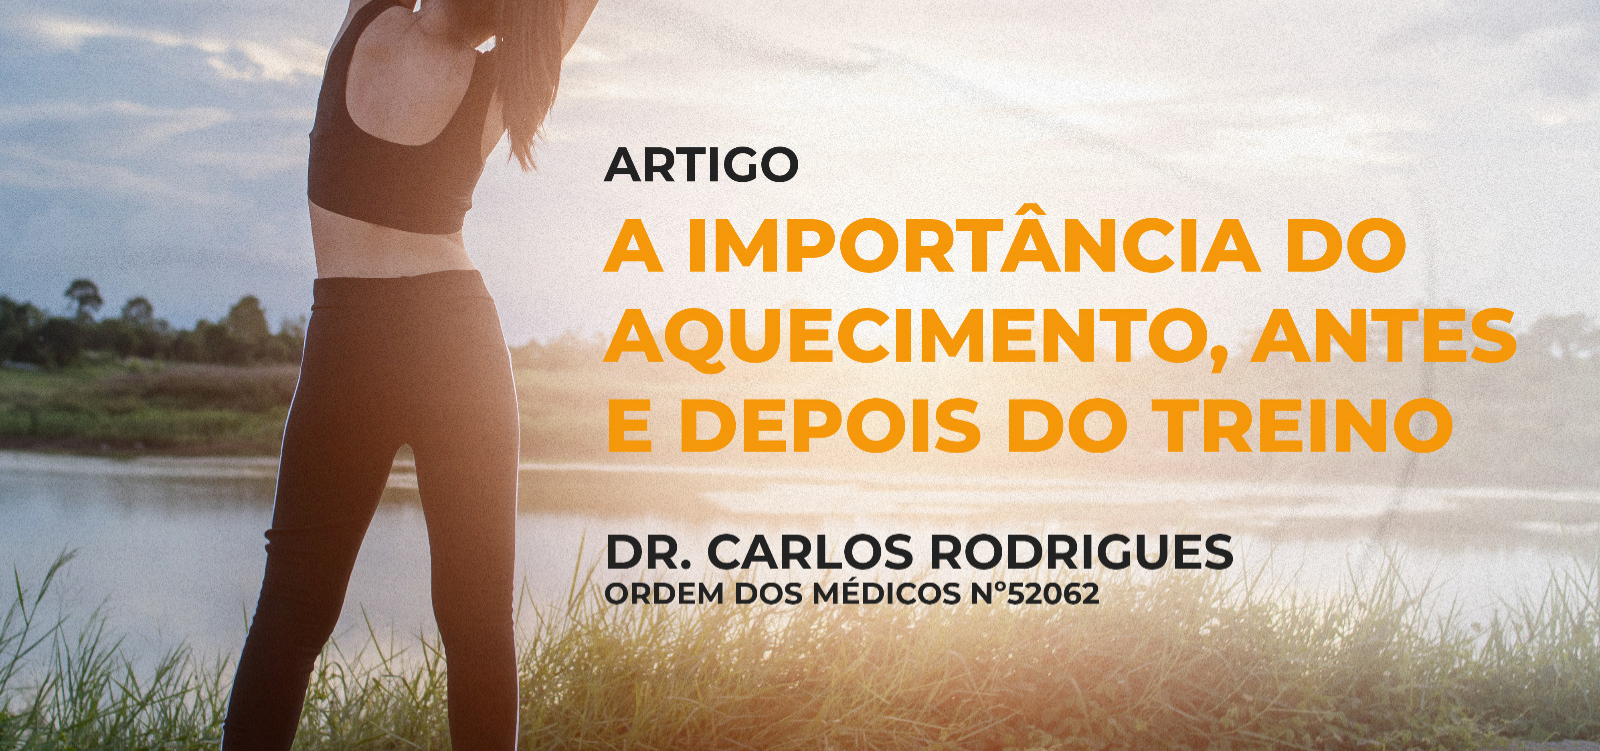 Dr. Carlos Rodrigues: A importância do aquecimento, antes e depois do treino